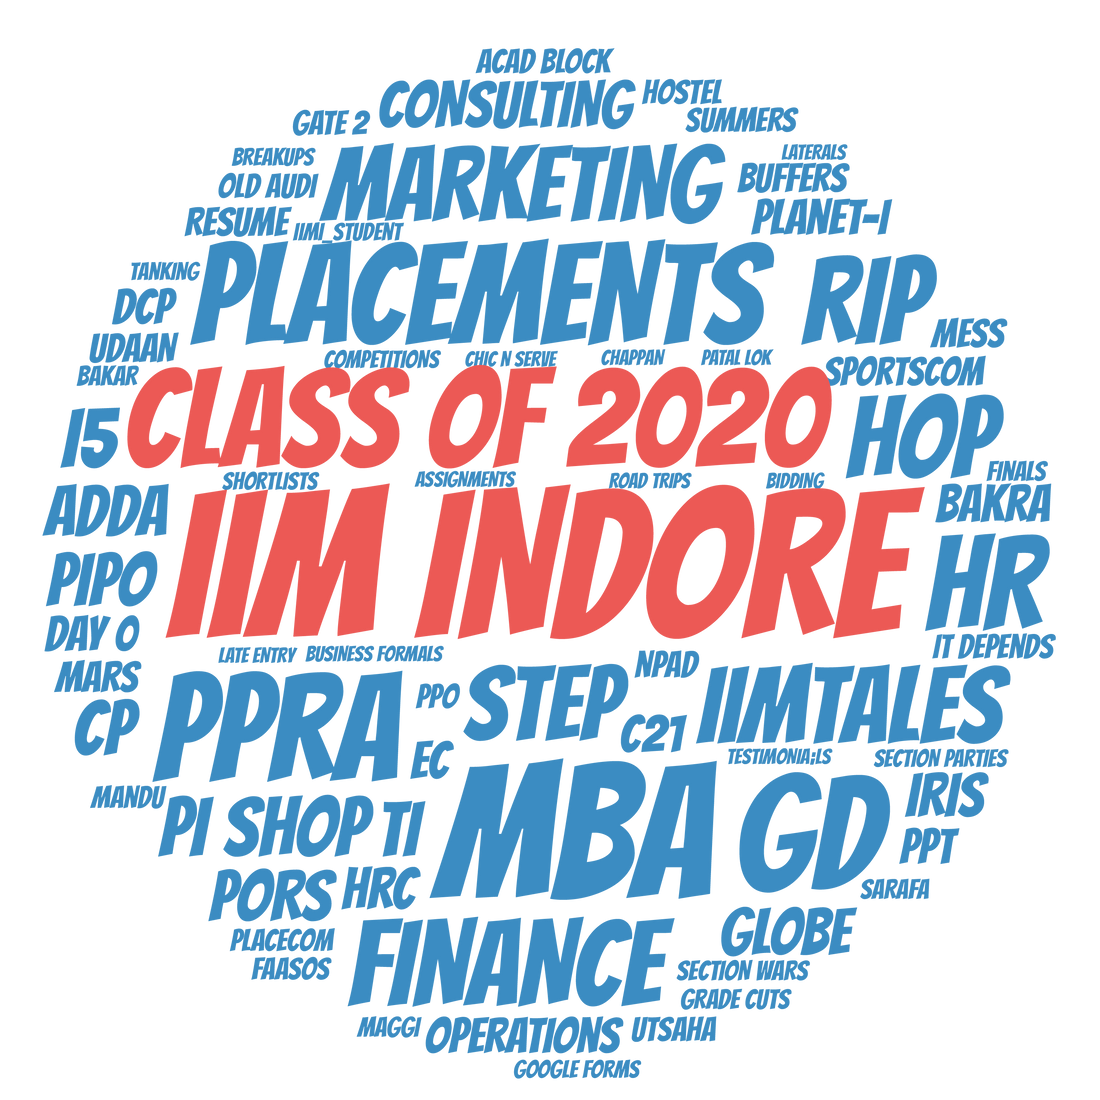 Class of IIM Indore